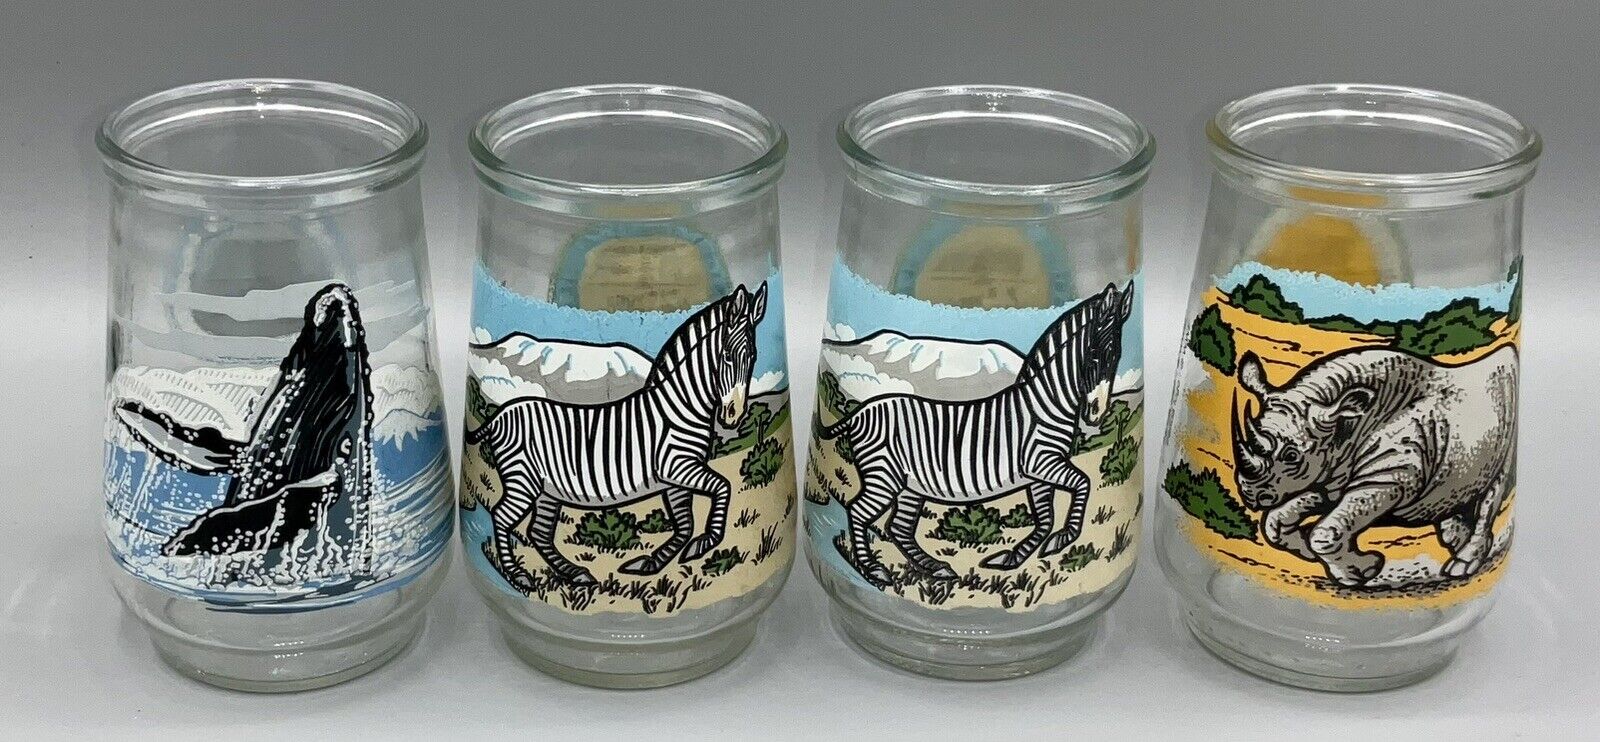 Welch's Endangered Species Glasses Jelly Jars Set of 4 Vintage 1990's